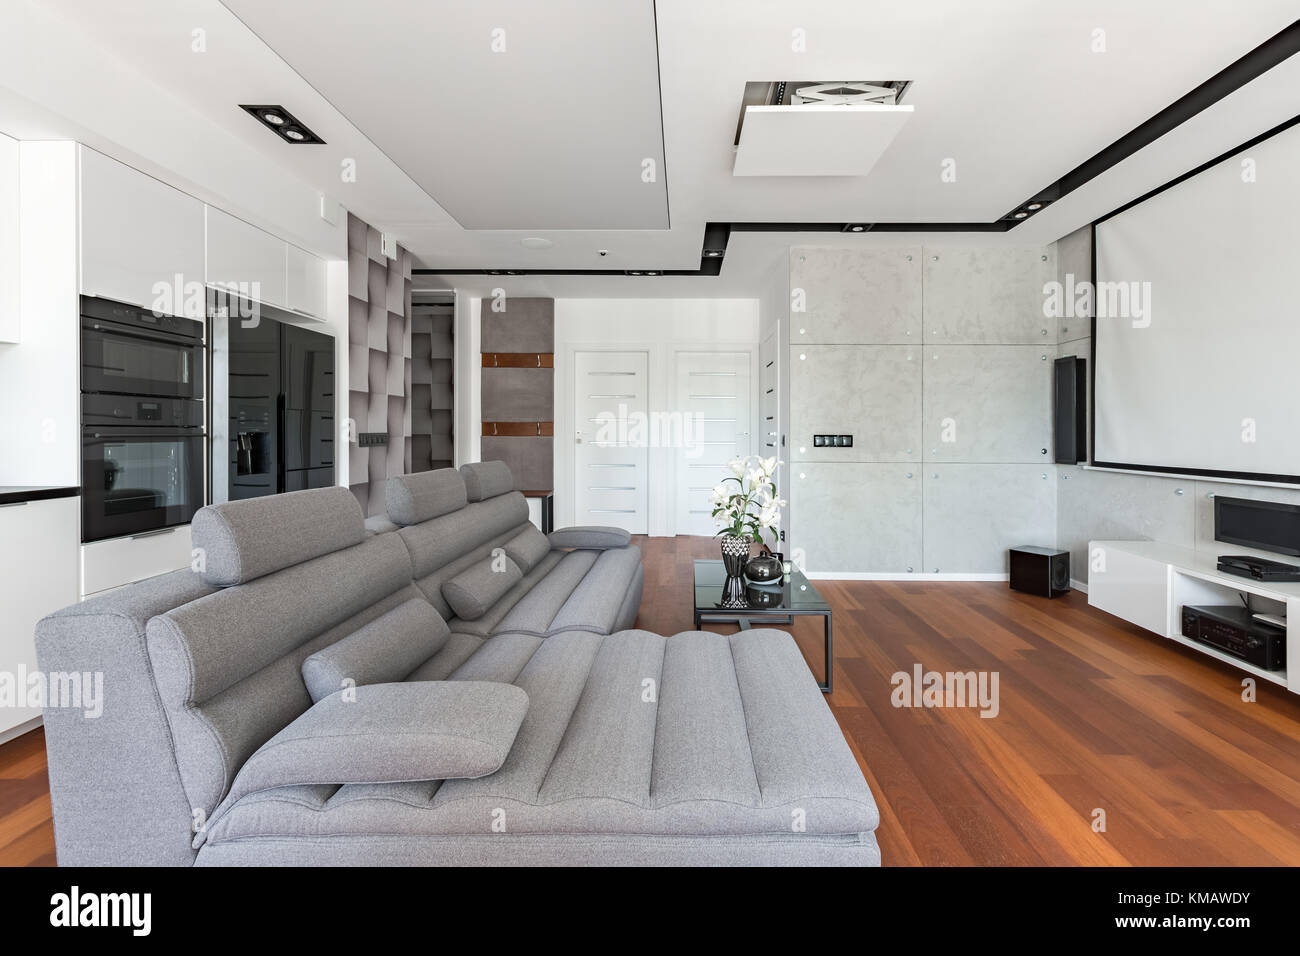 Modernes Wohnzimmer mit Projektionsleinwand, Sofa und Kochnische Stockfoto